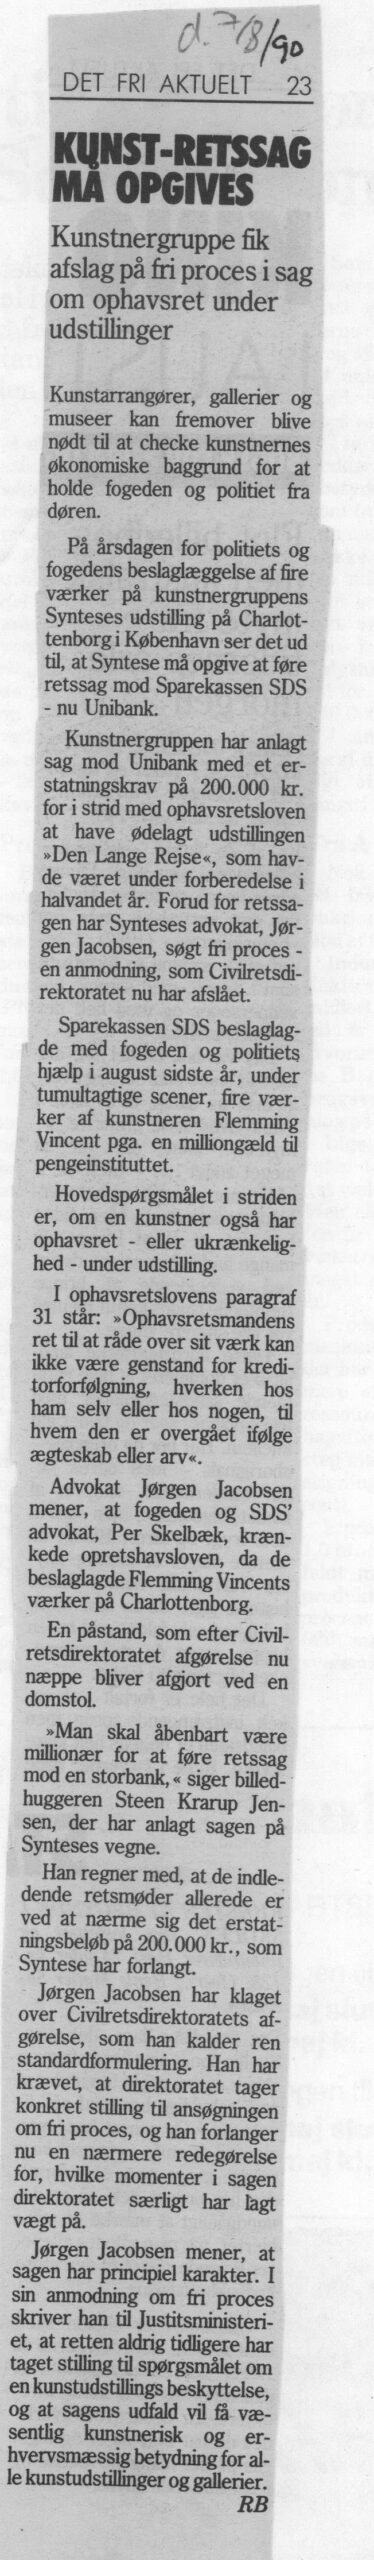 Kunst-retssag må opgives. Omtale (Retssag. Den lange rejse. Charlottenborg 1989, København). RB. Det Fri Aktuelt.